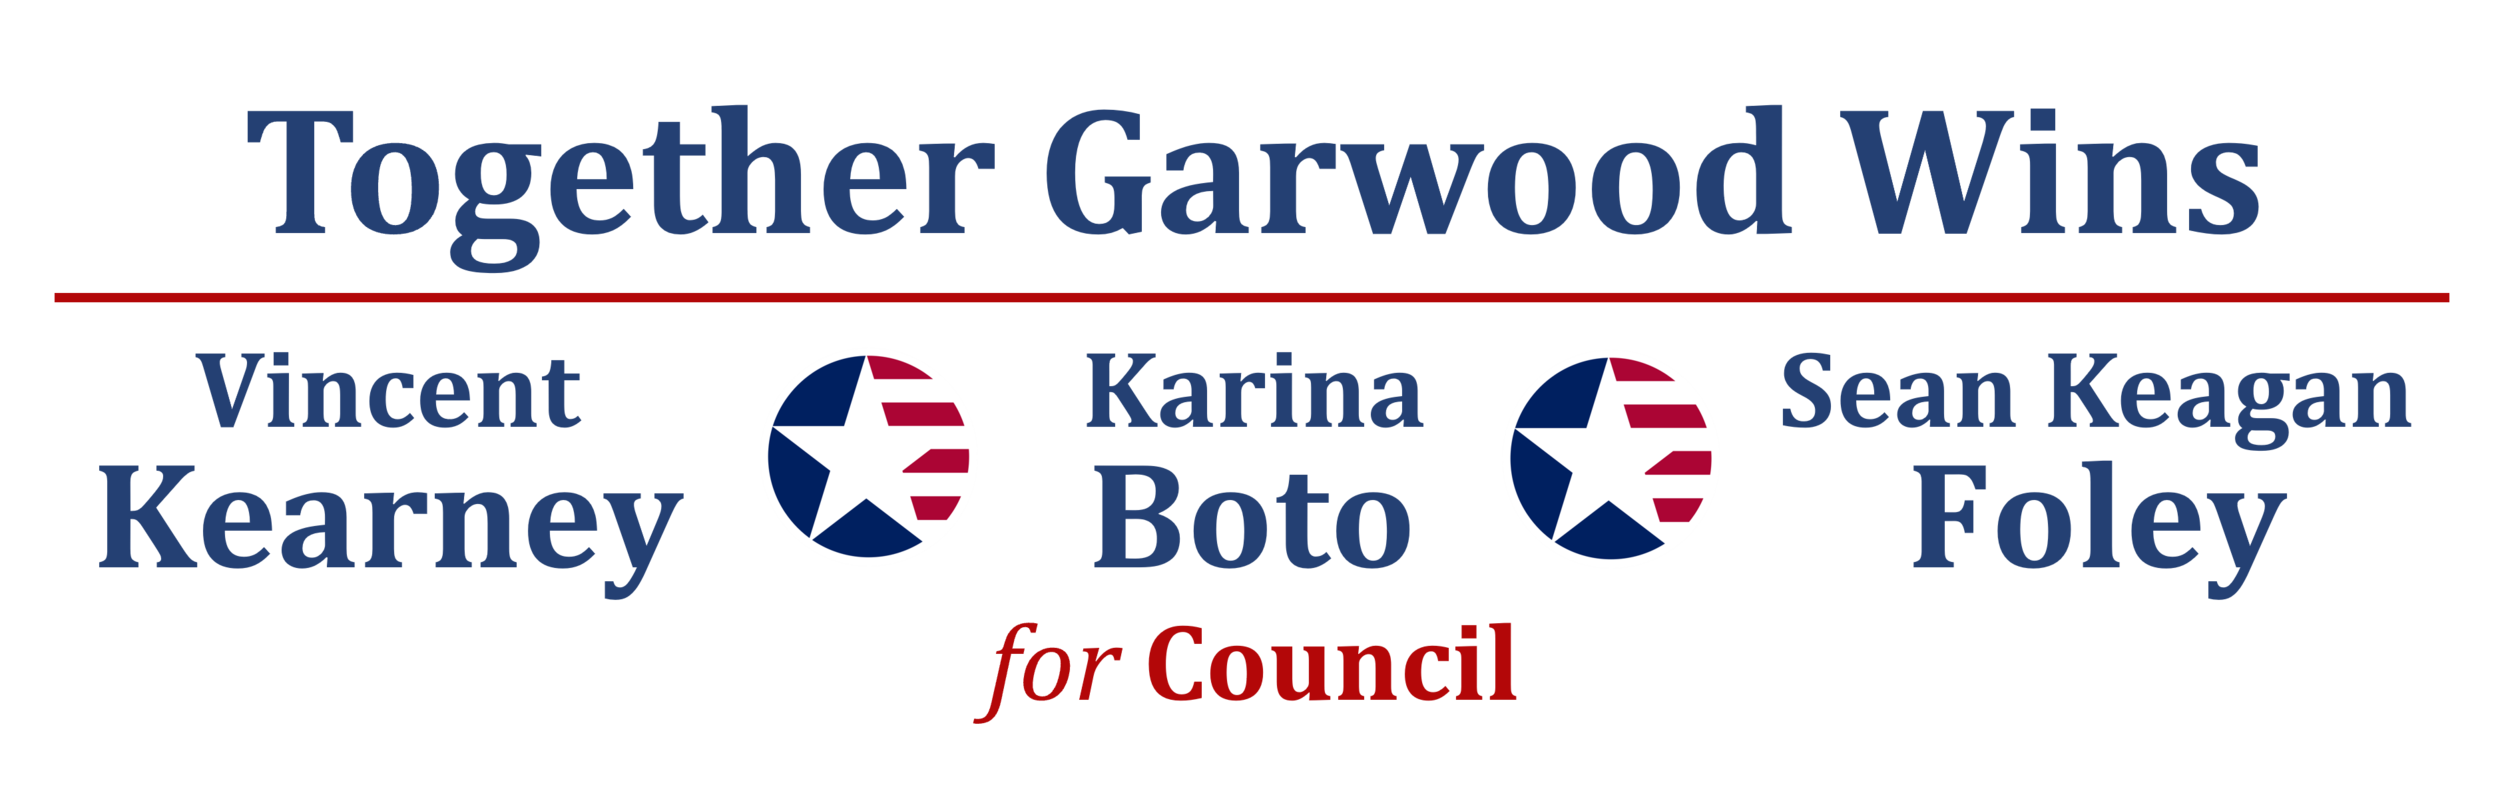 Vincent Kearney, Karina Boto and Sean Foley for Garwood Council